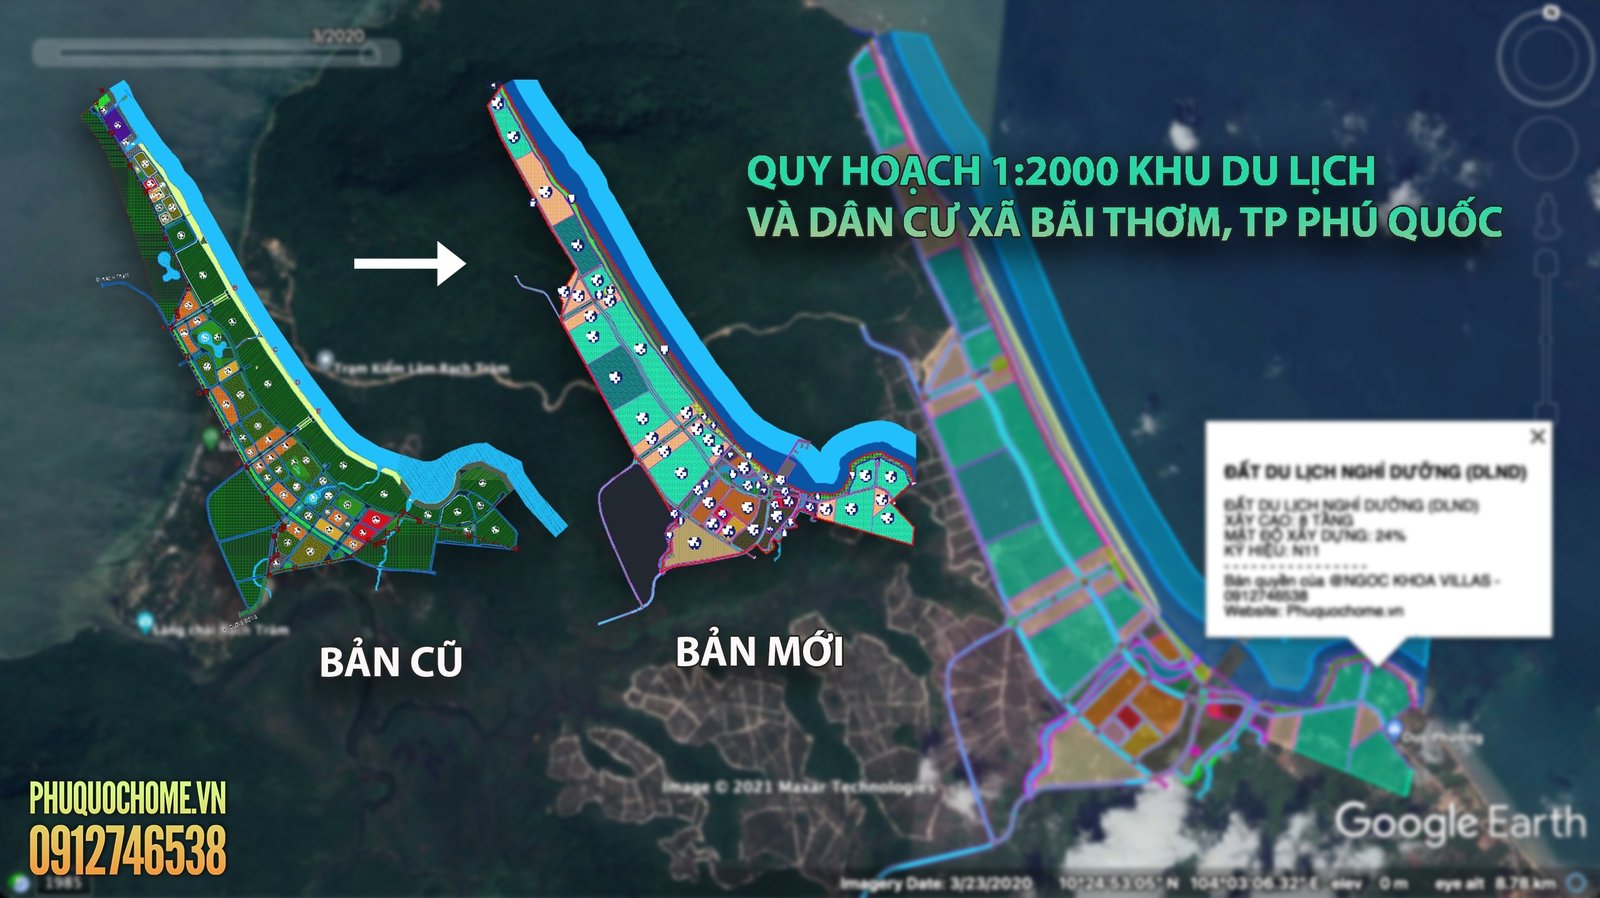 Xem hình ảnh về khu du lịch và khu dân cư xã Bãi Thơm - Phú Quốc 2024 sẽ giúp bạn thấy được sự hội tụ của những yếu tố văn hóa, sinh thái, và phát triển bền vững. Đây chắc chắn là địa điểm lý tưởng để đầu tư và định cư trong tương lai.